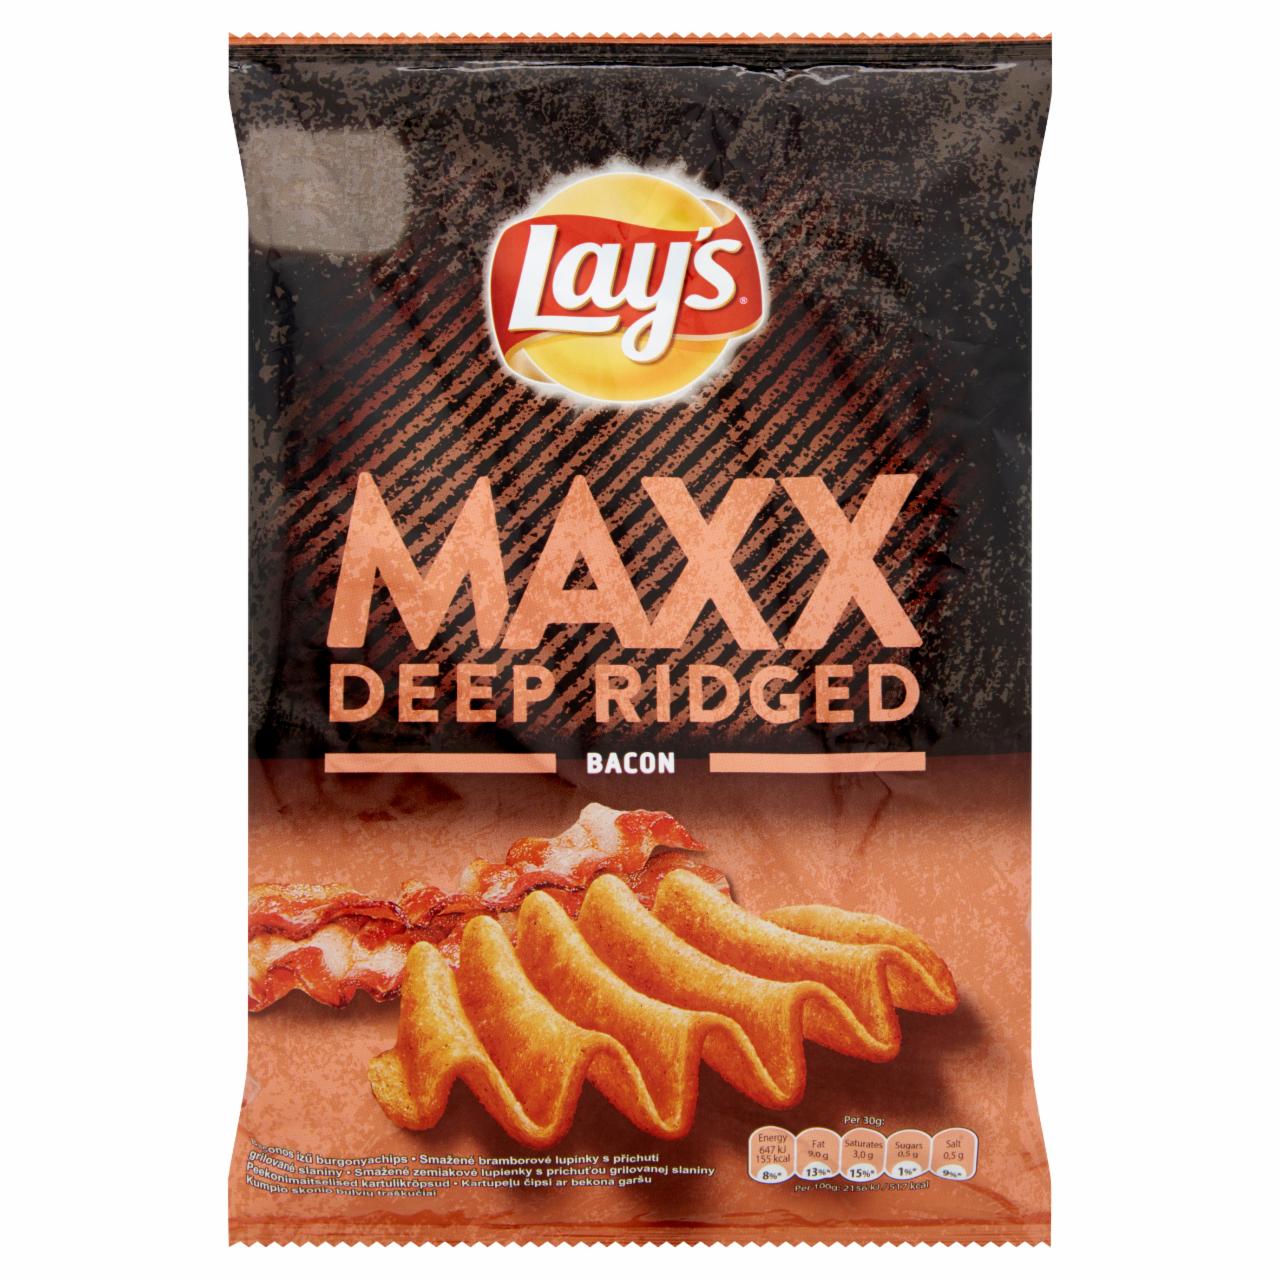 Képek - Lay's Maxx baconos ízű burgonyachips 70 g